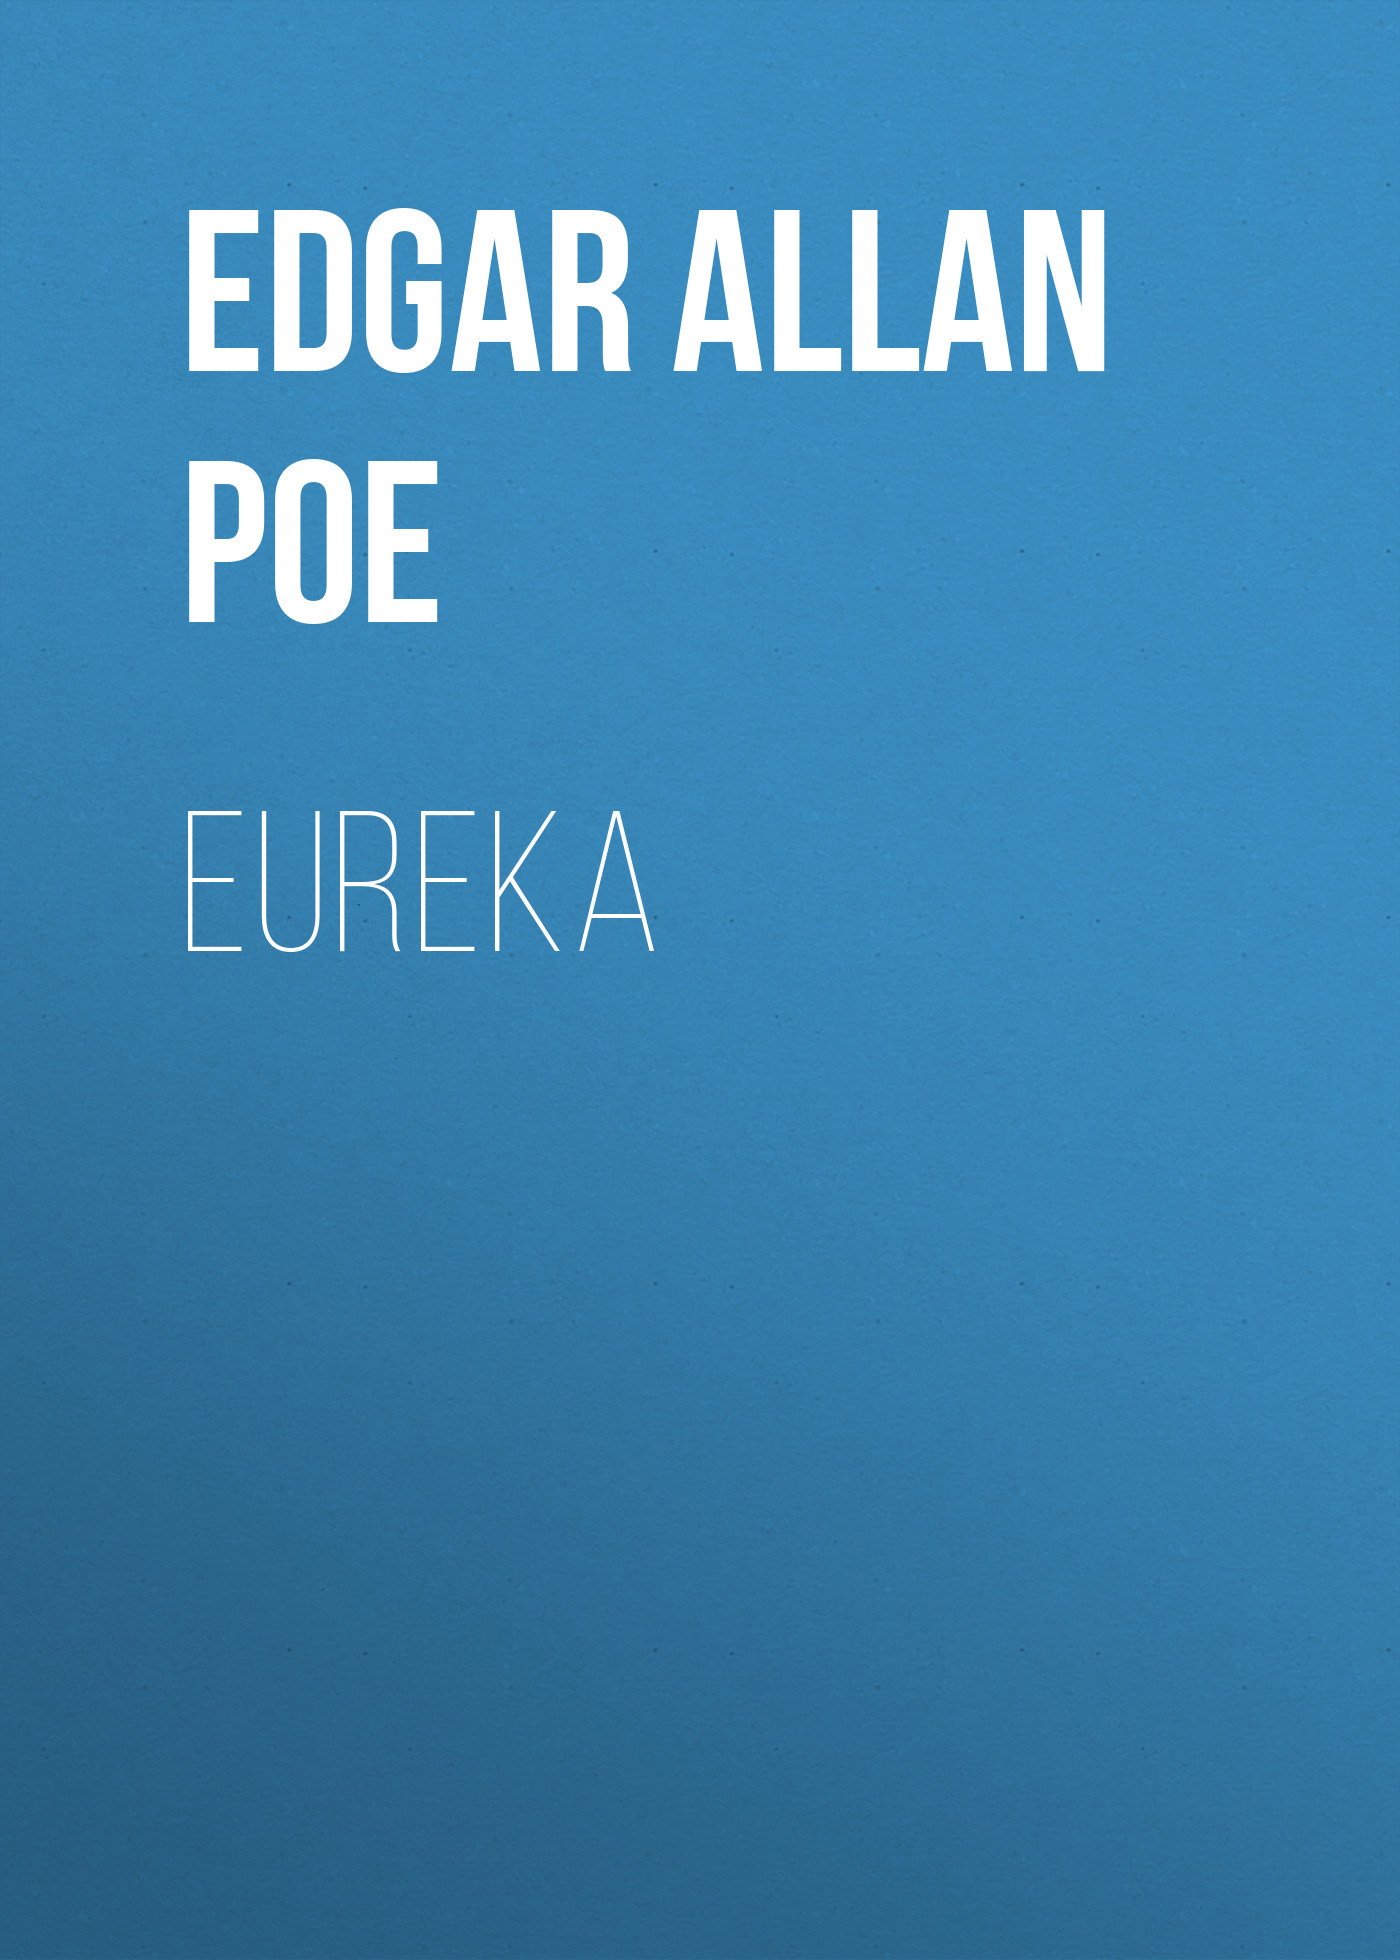 Книга Eureka из серии , созданная Edgar Poe, может относится к жанру Литература 19 века, Зарубежная старинная литература, Зарубежная классика. Стоимость электронной книги Eureka с идентификатором 25293355 составляет 0 руб.